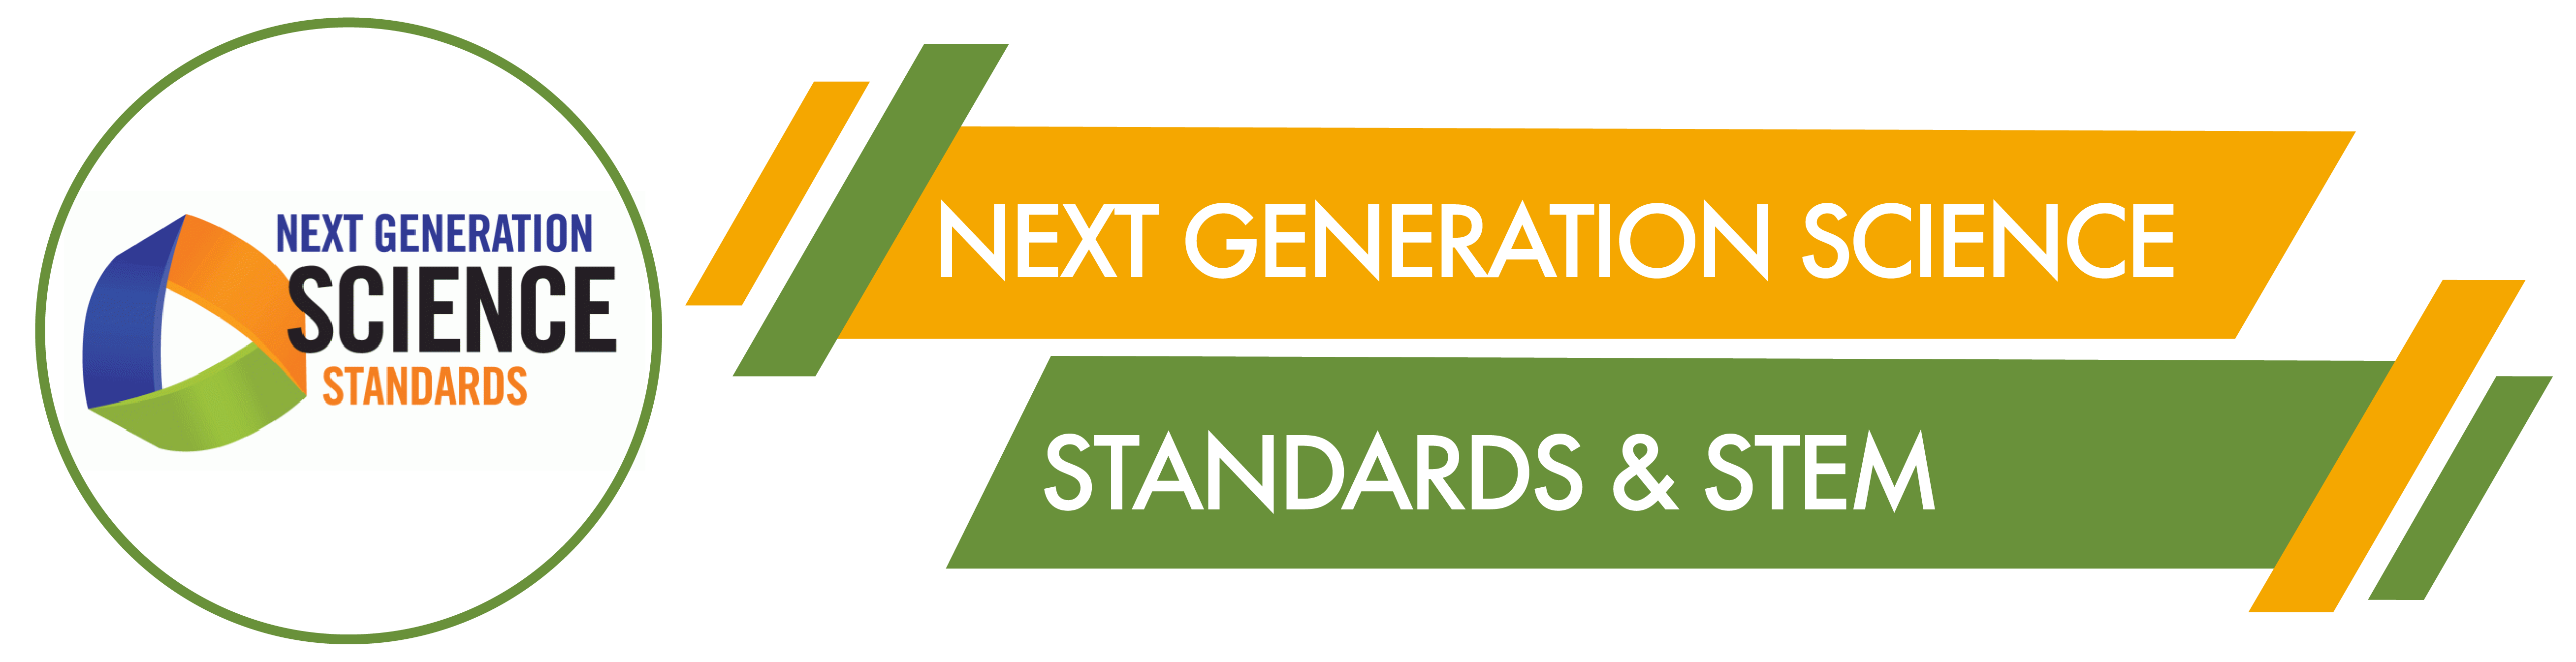 Next Generation Science Standards & STEM Banner